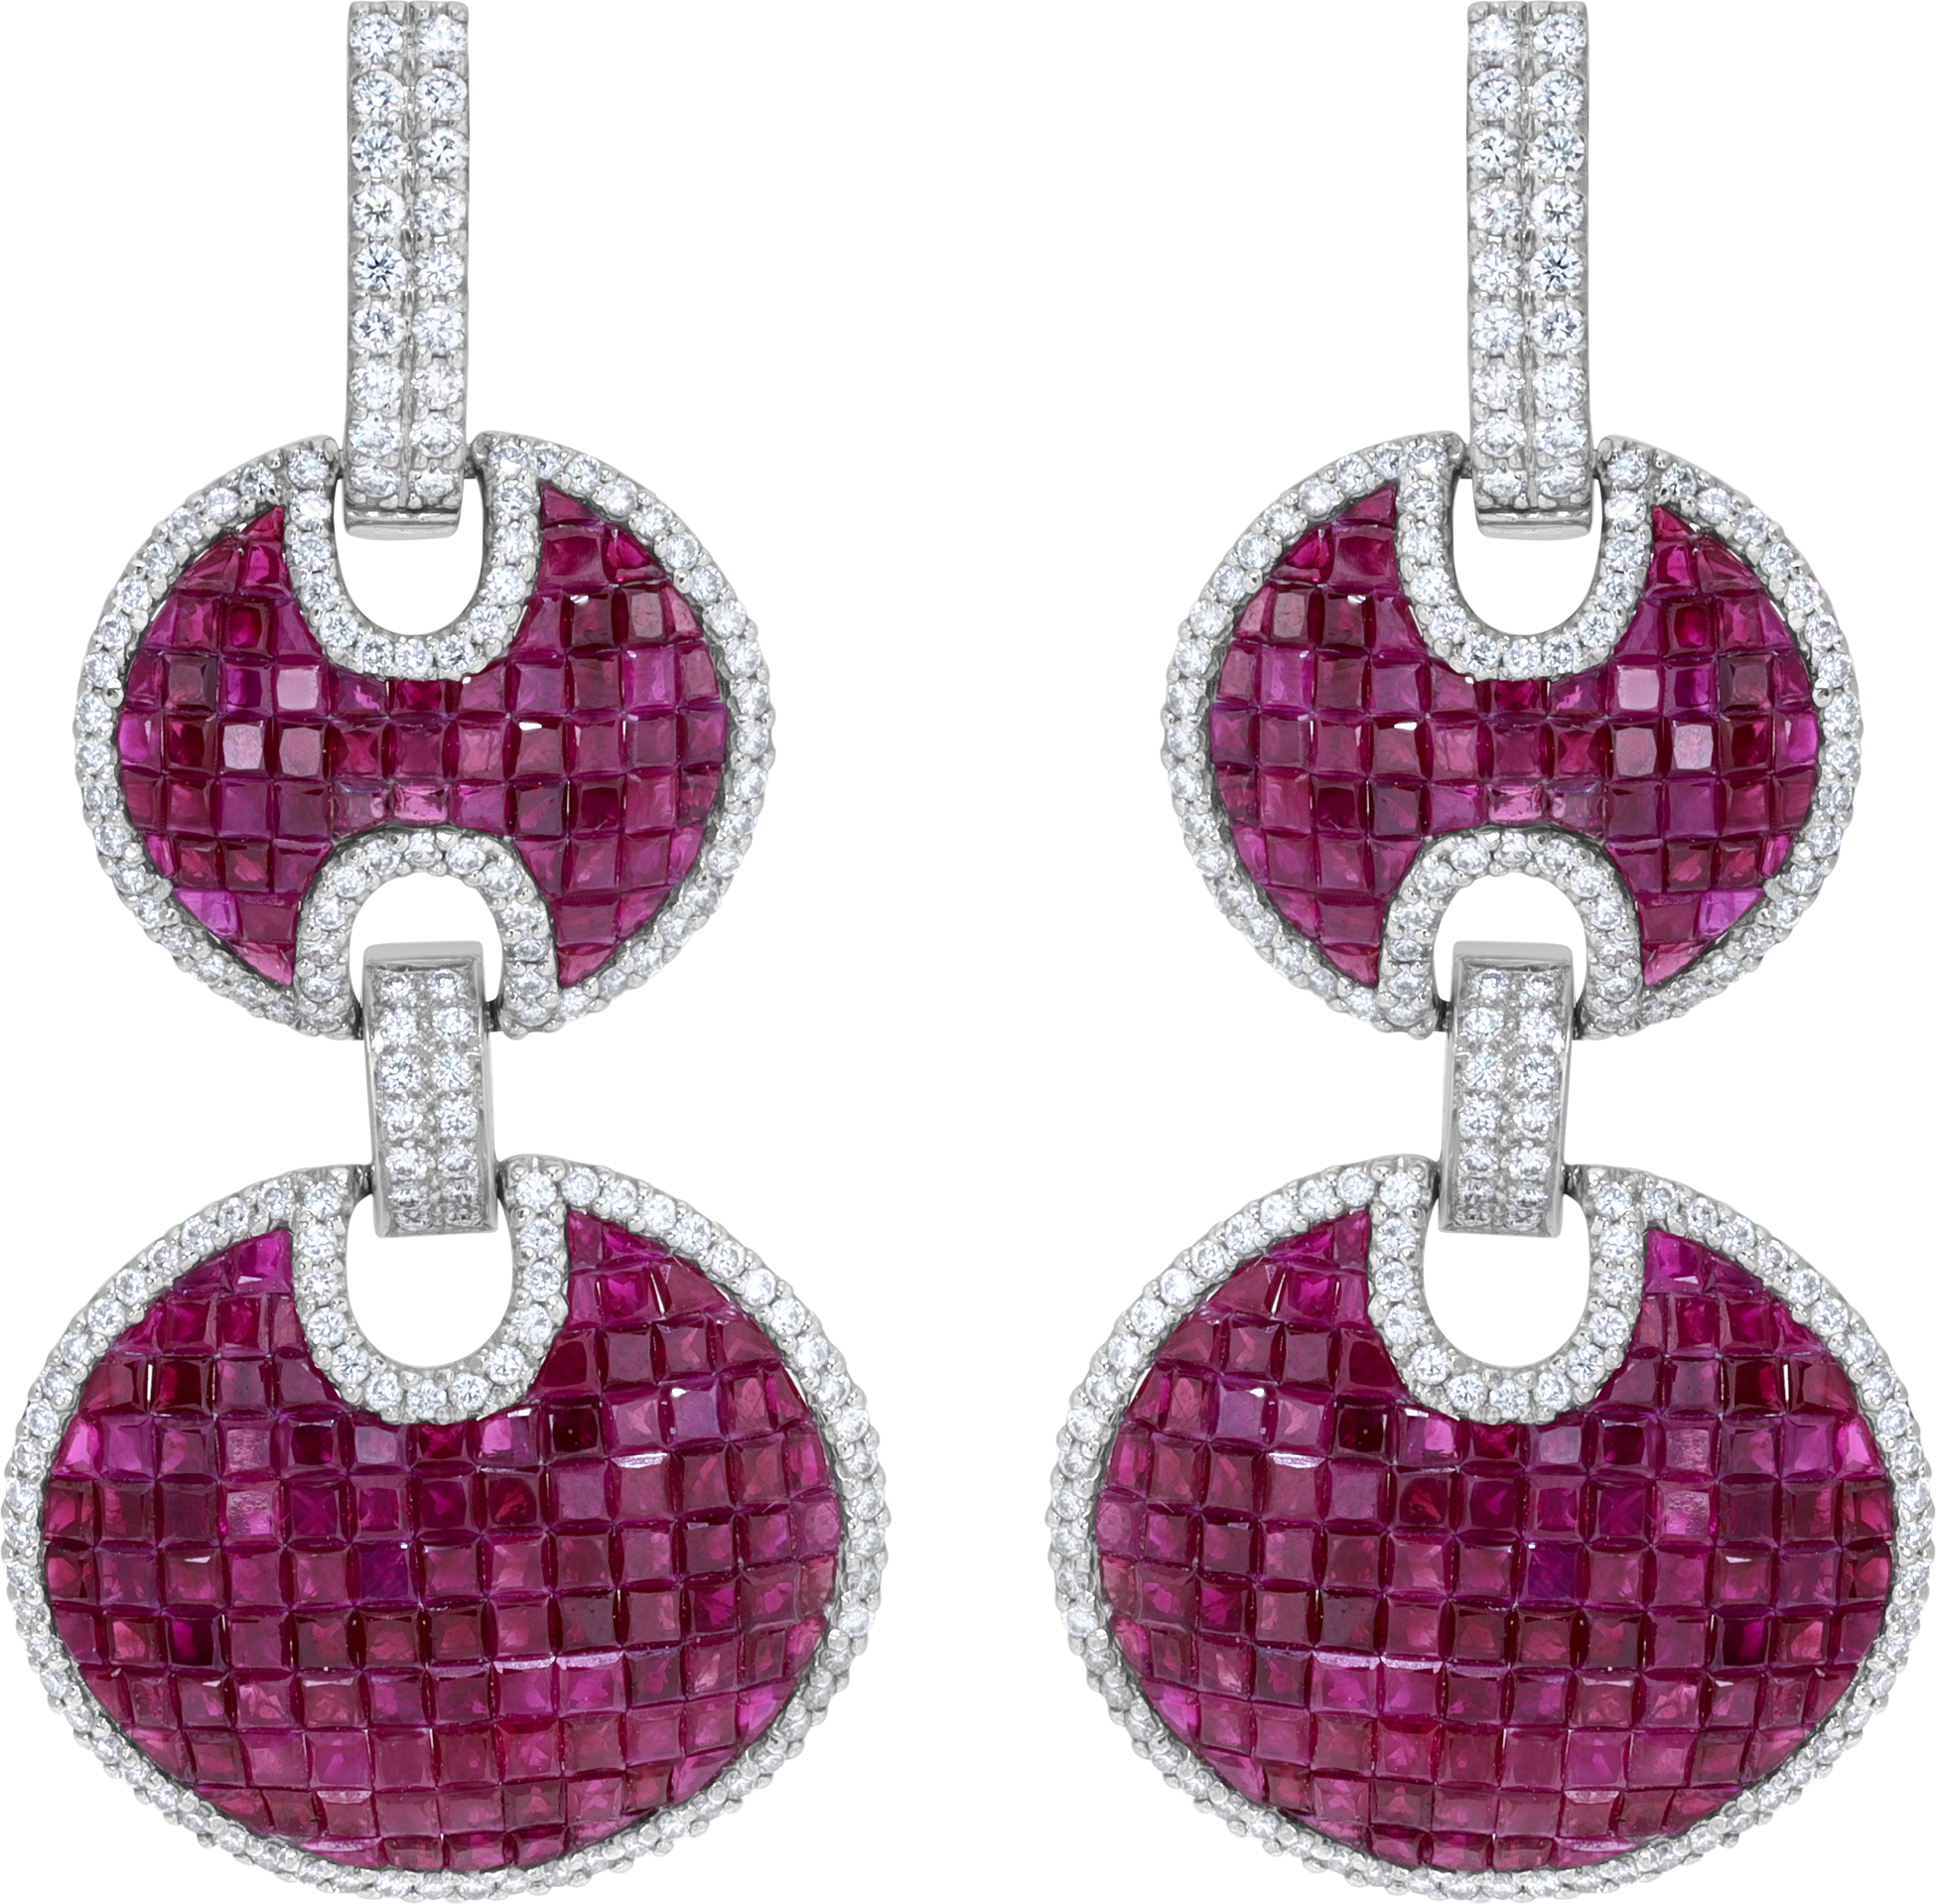 Burma ruby & diamond earrings in 18k white gold